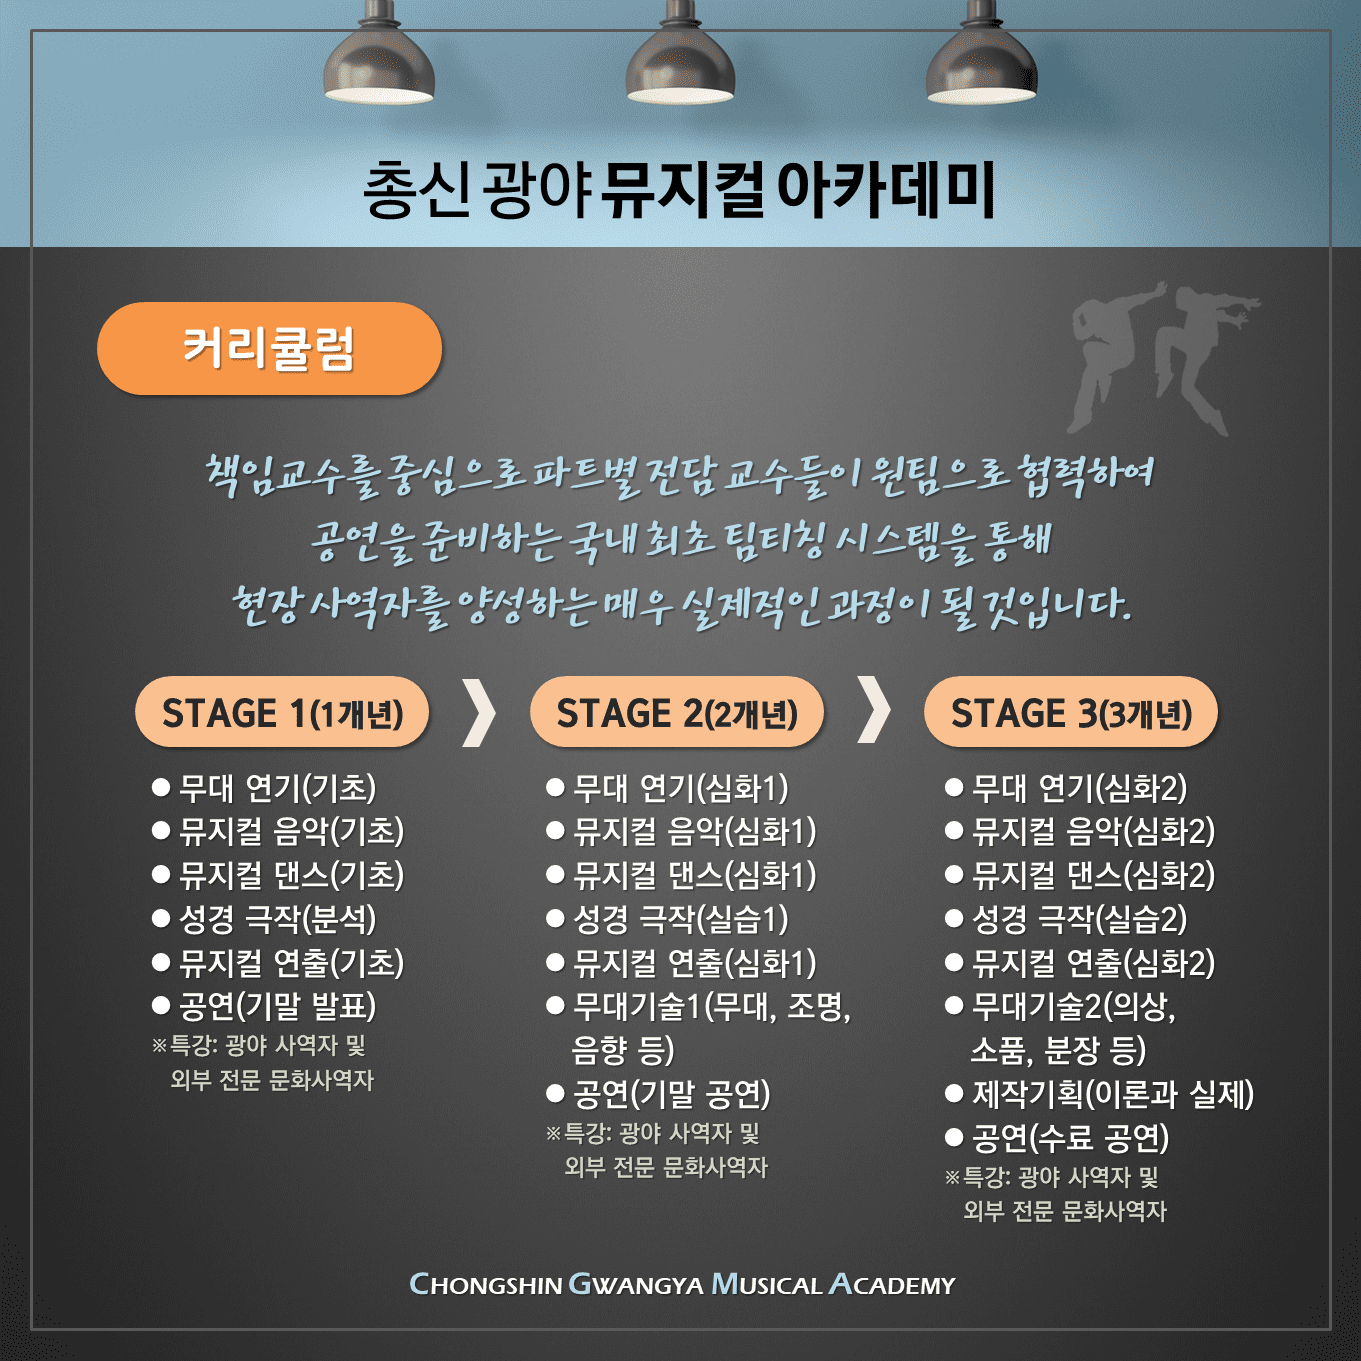 총신 광야 뮤지컬 아카데미4